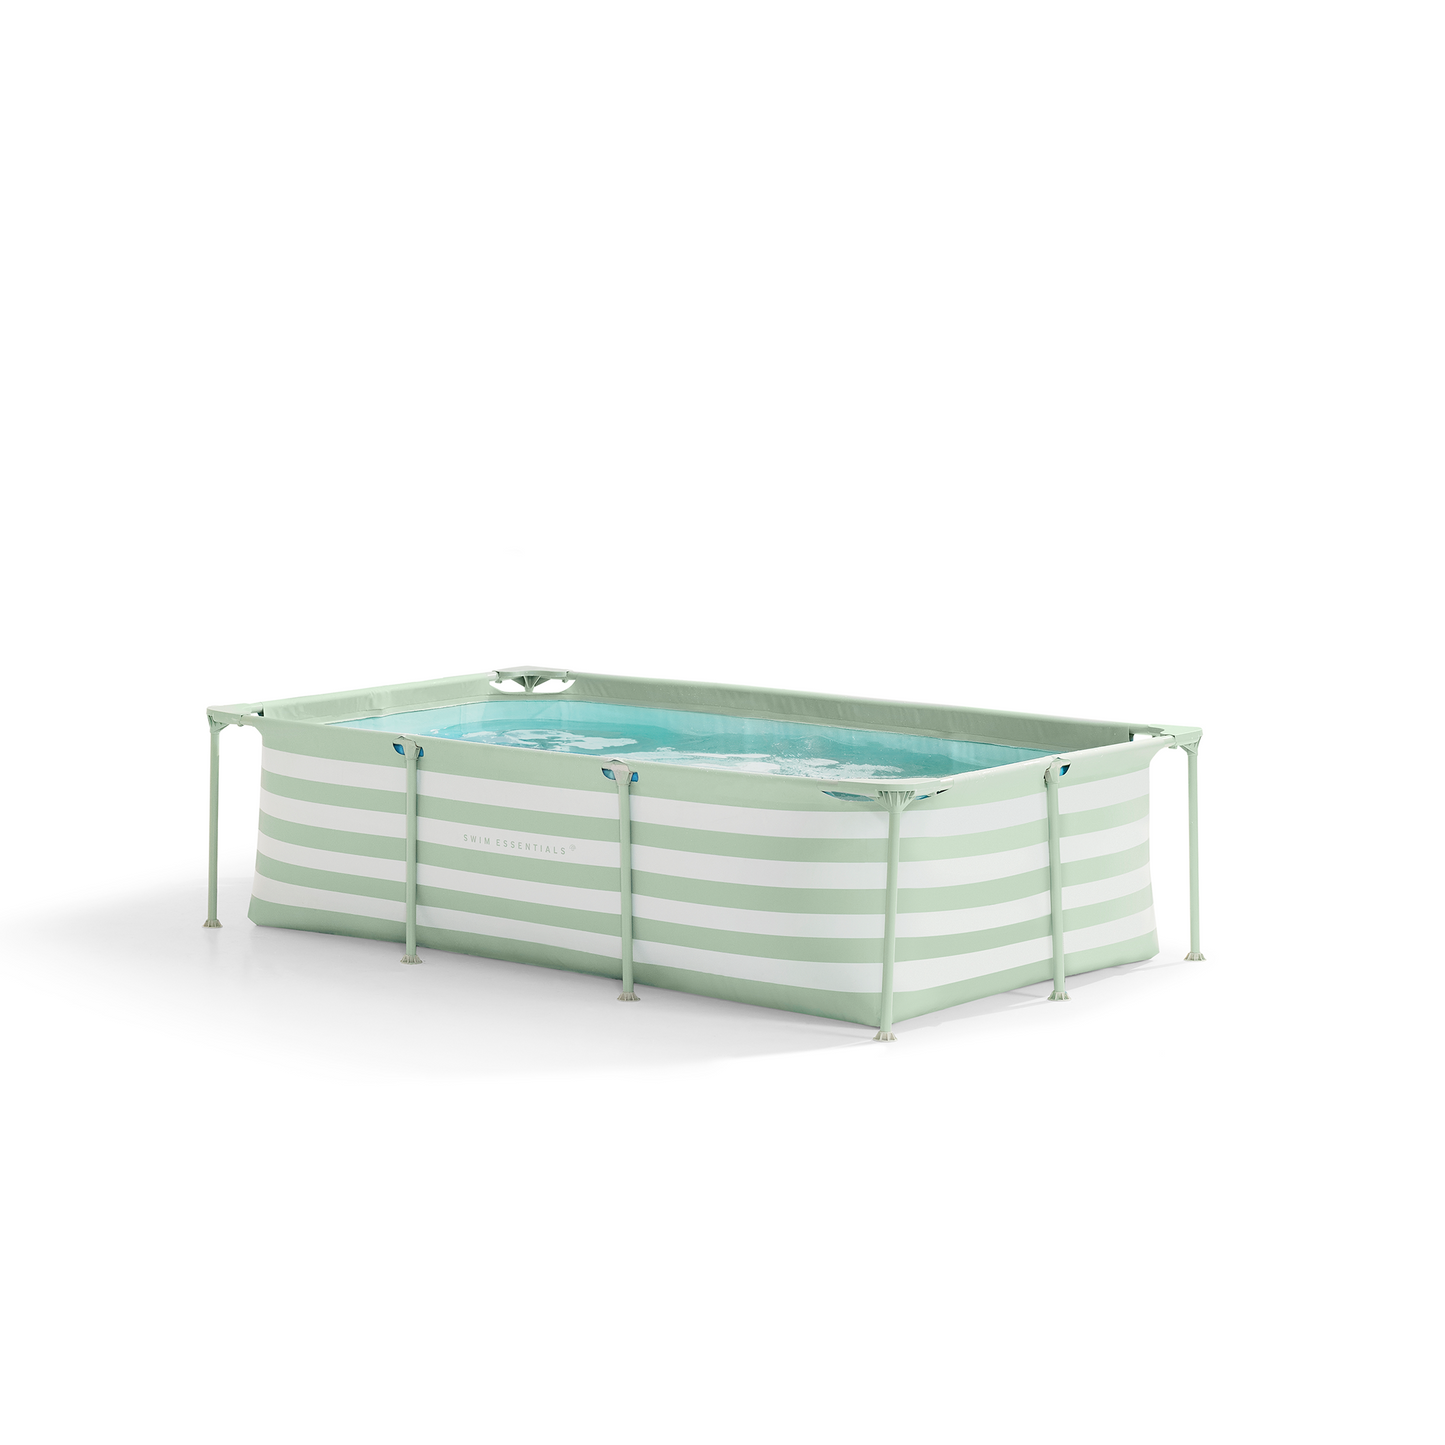 SE Frame Schwimmbad 260x160x65 cm Grün-Weiß - mit Filterpumpe